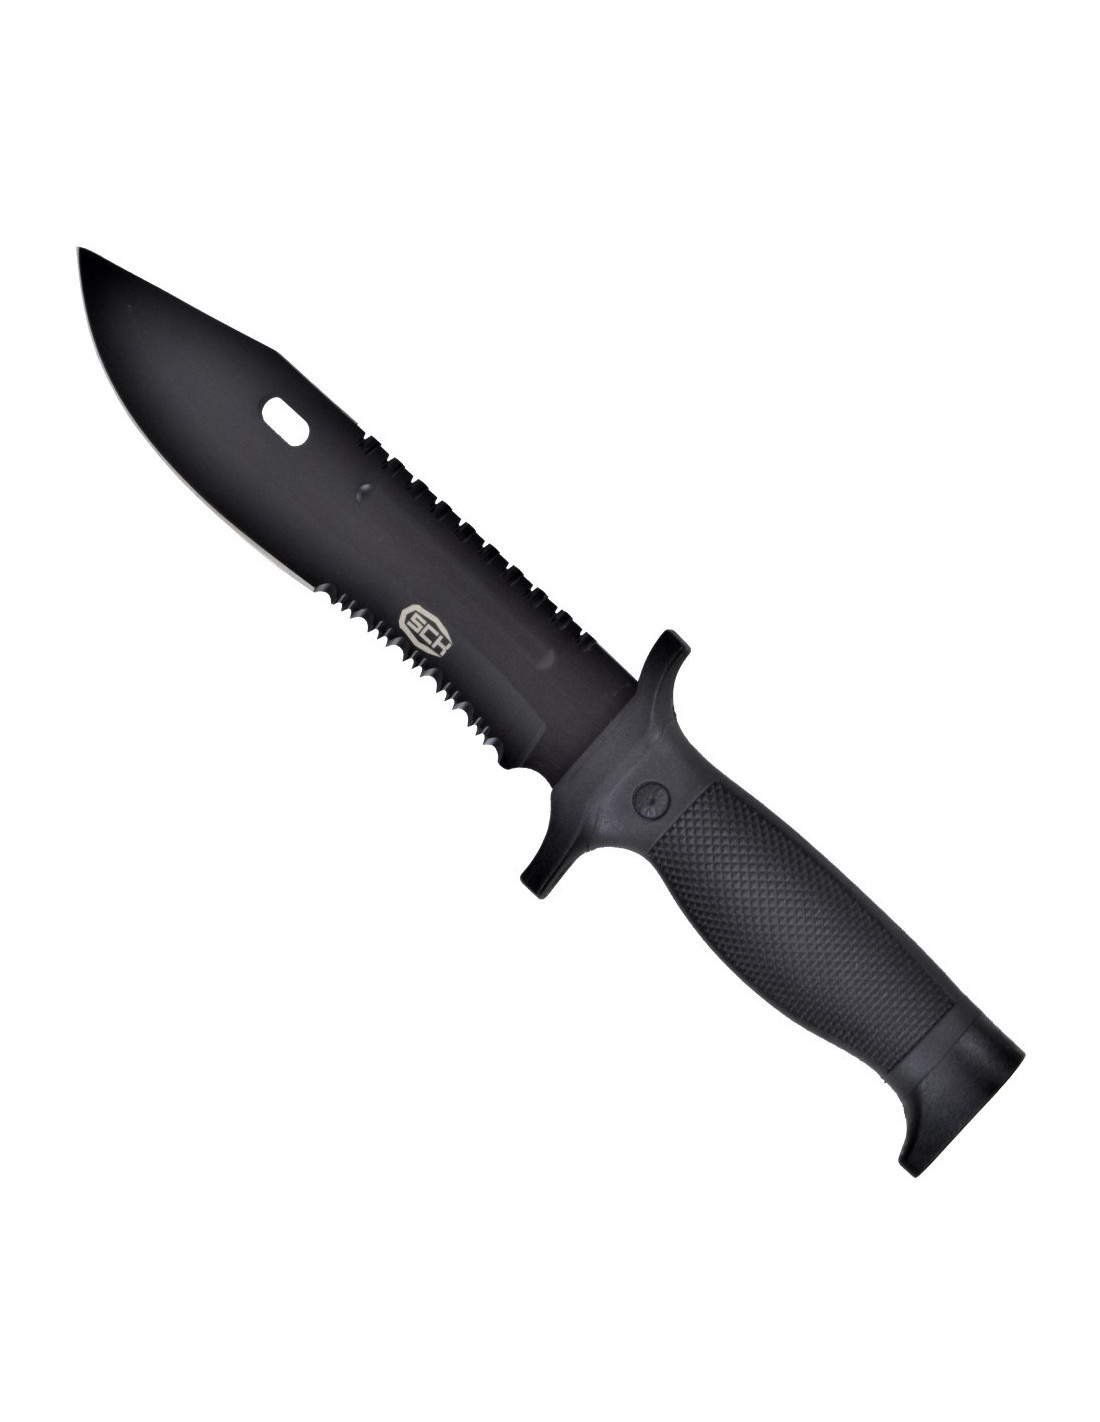 Excaliburt cuchillos sierra